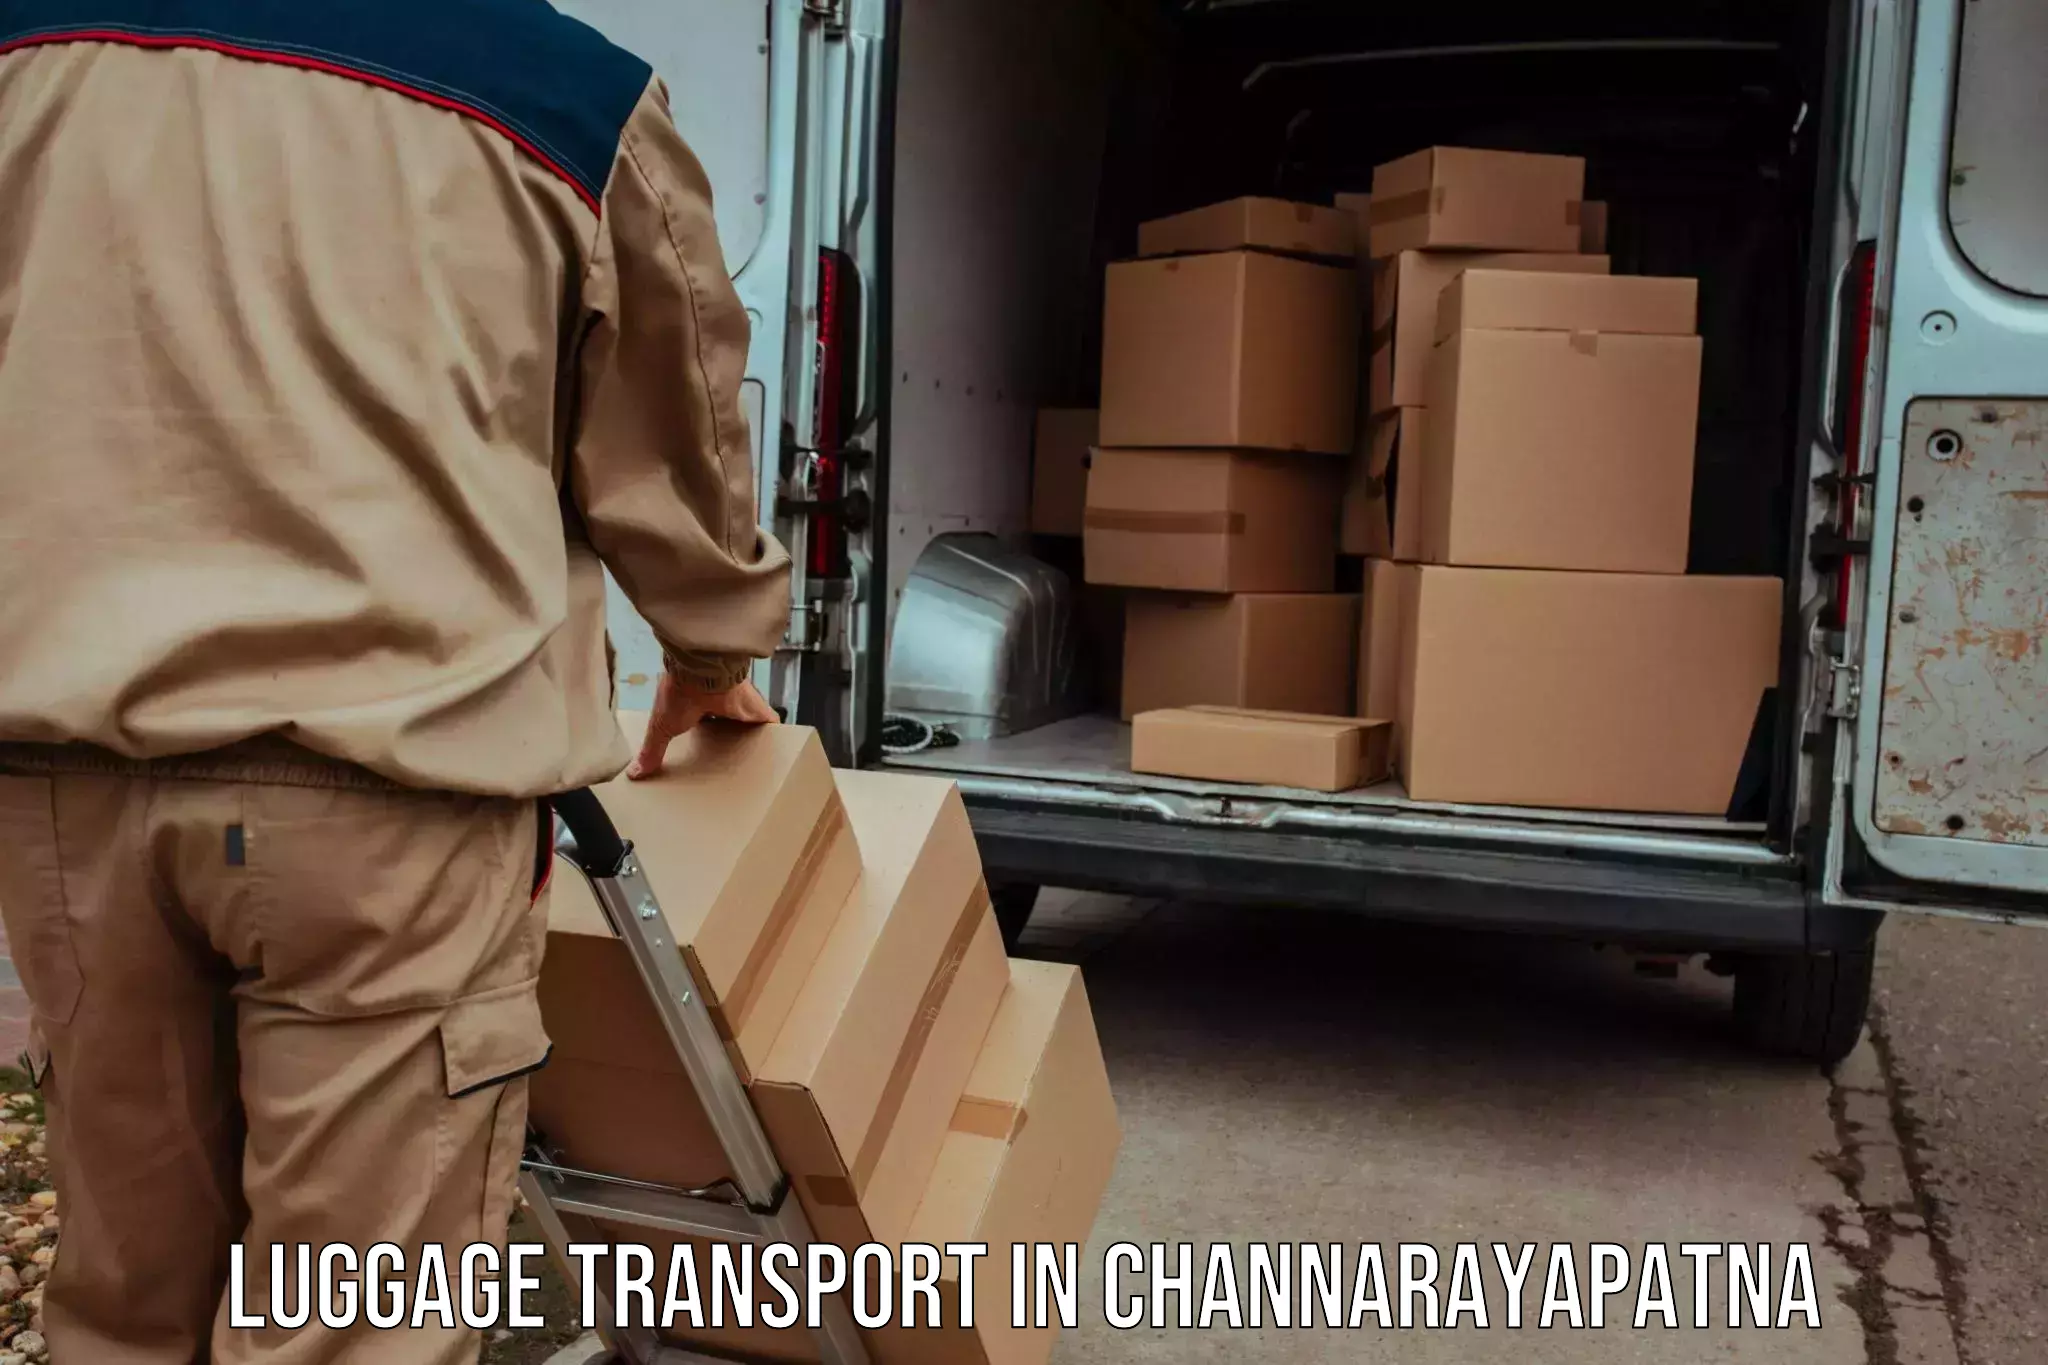 Baggage transport management in Channarayapatna